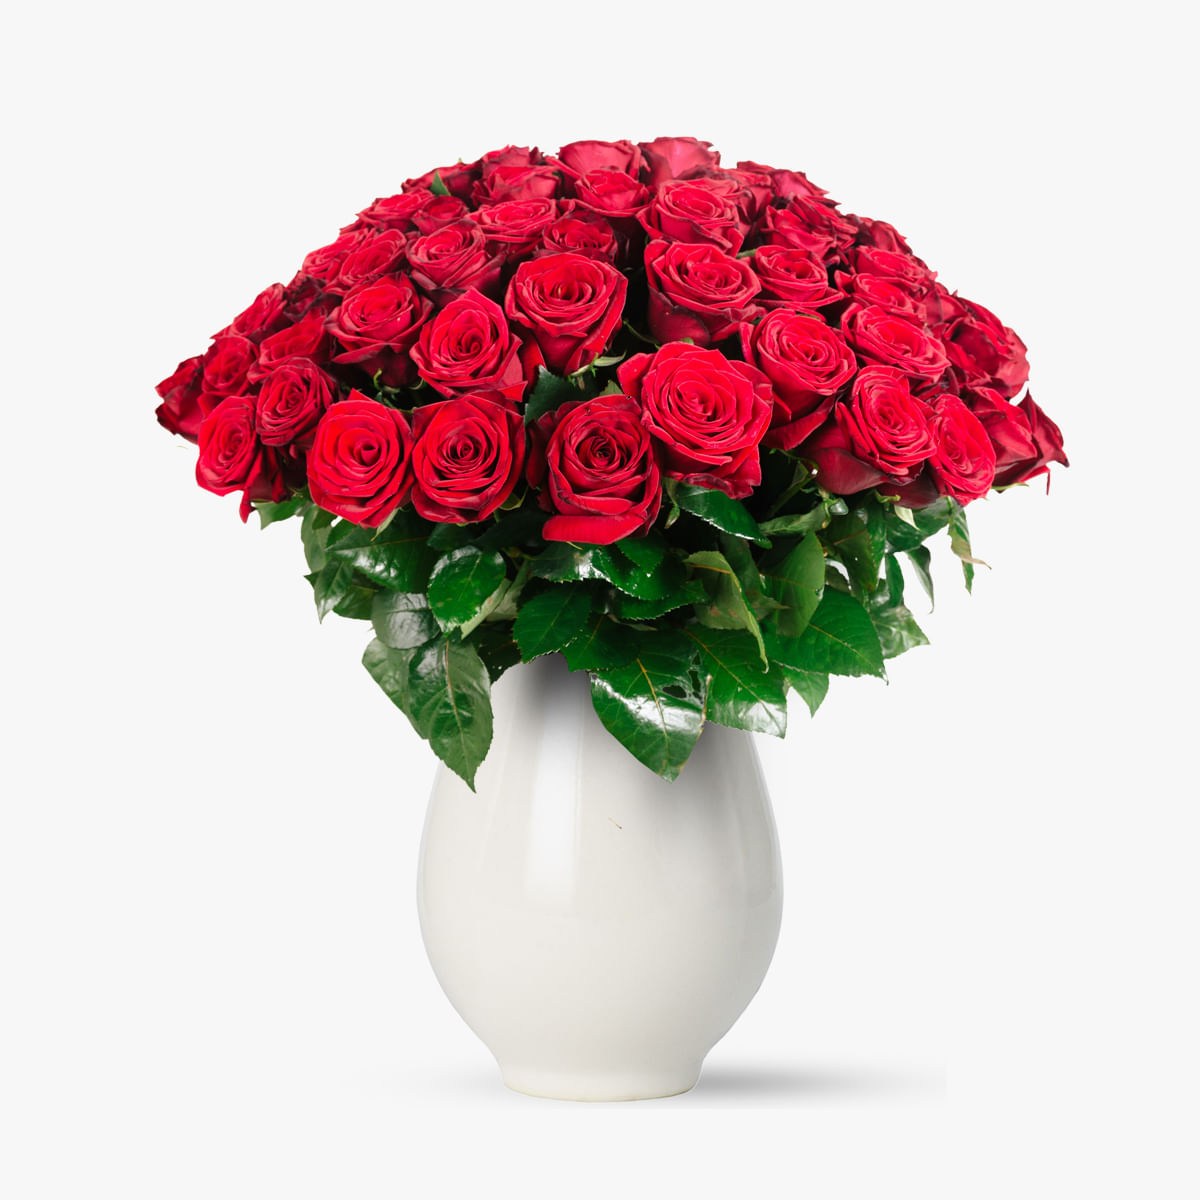 Buchet de 45 trandafiri rosii floria.ro